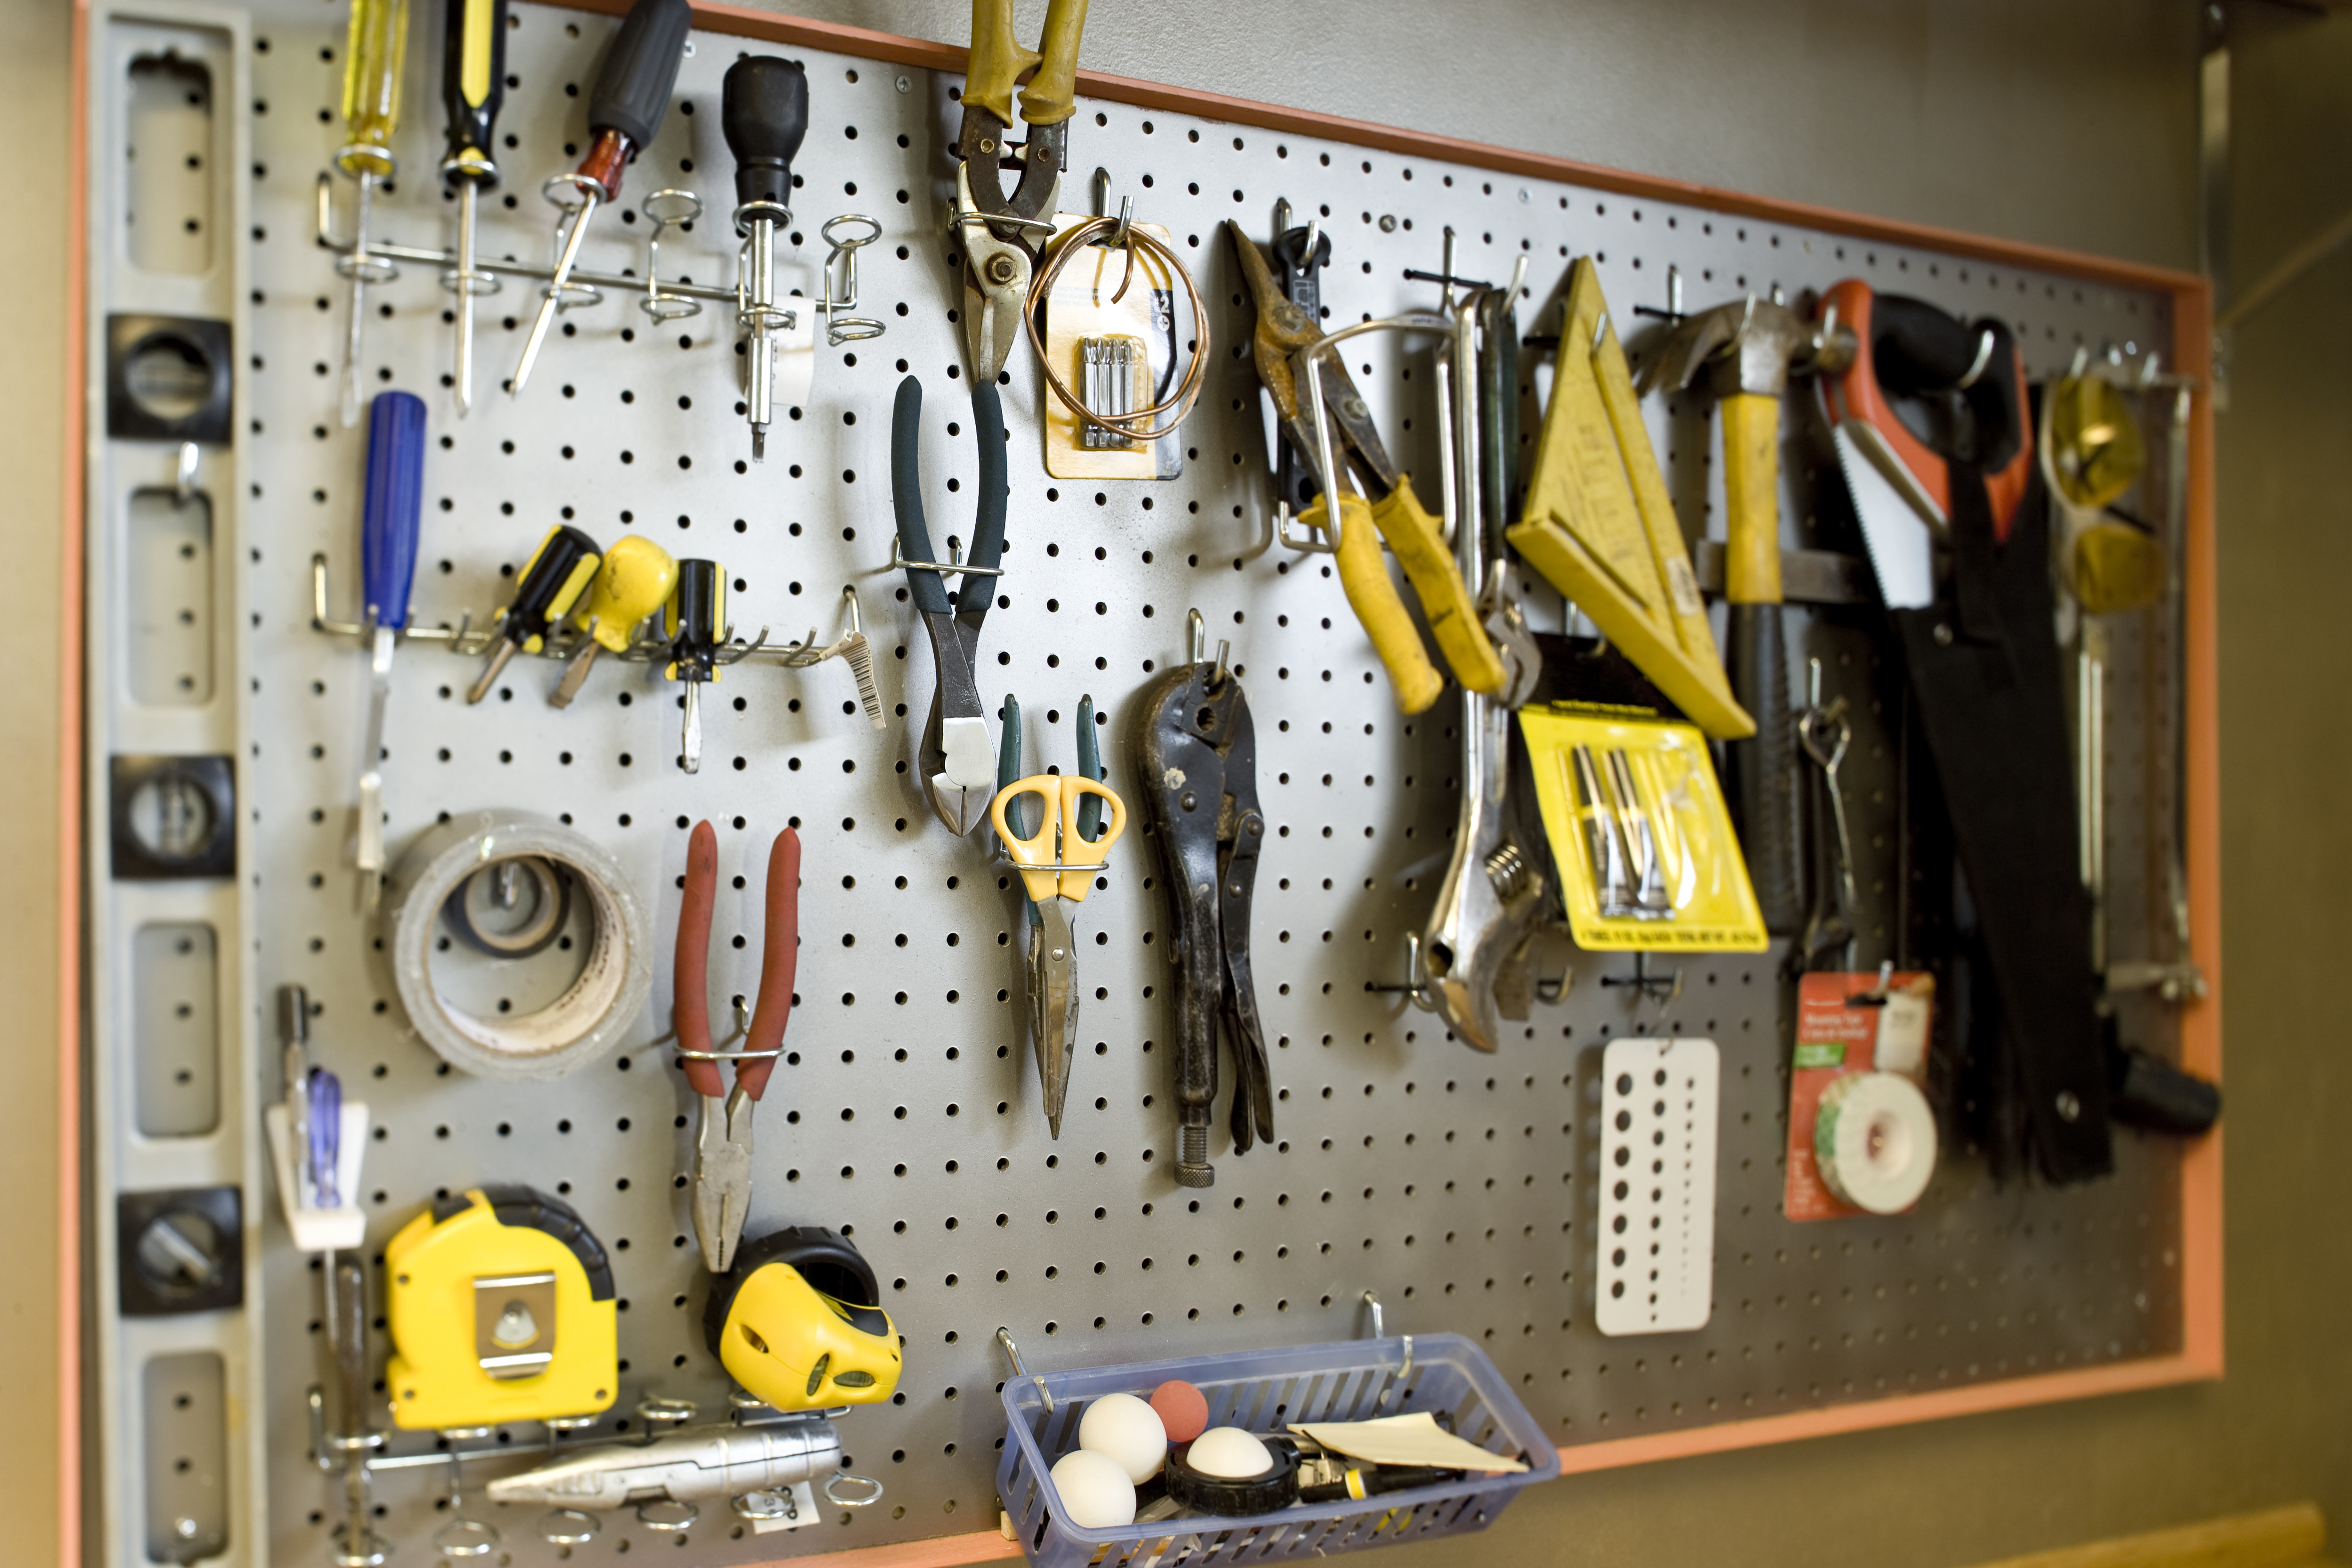 Garage Tool Organization